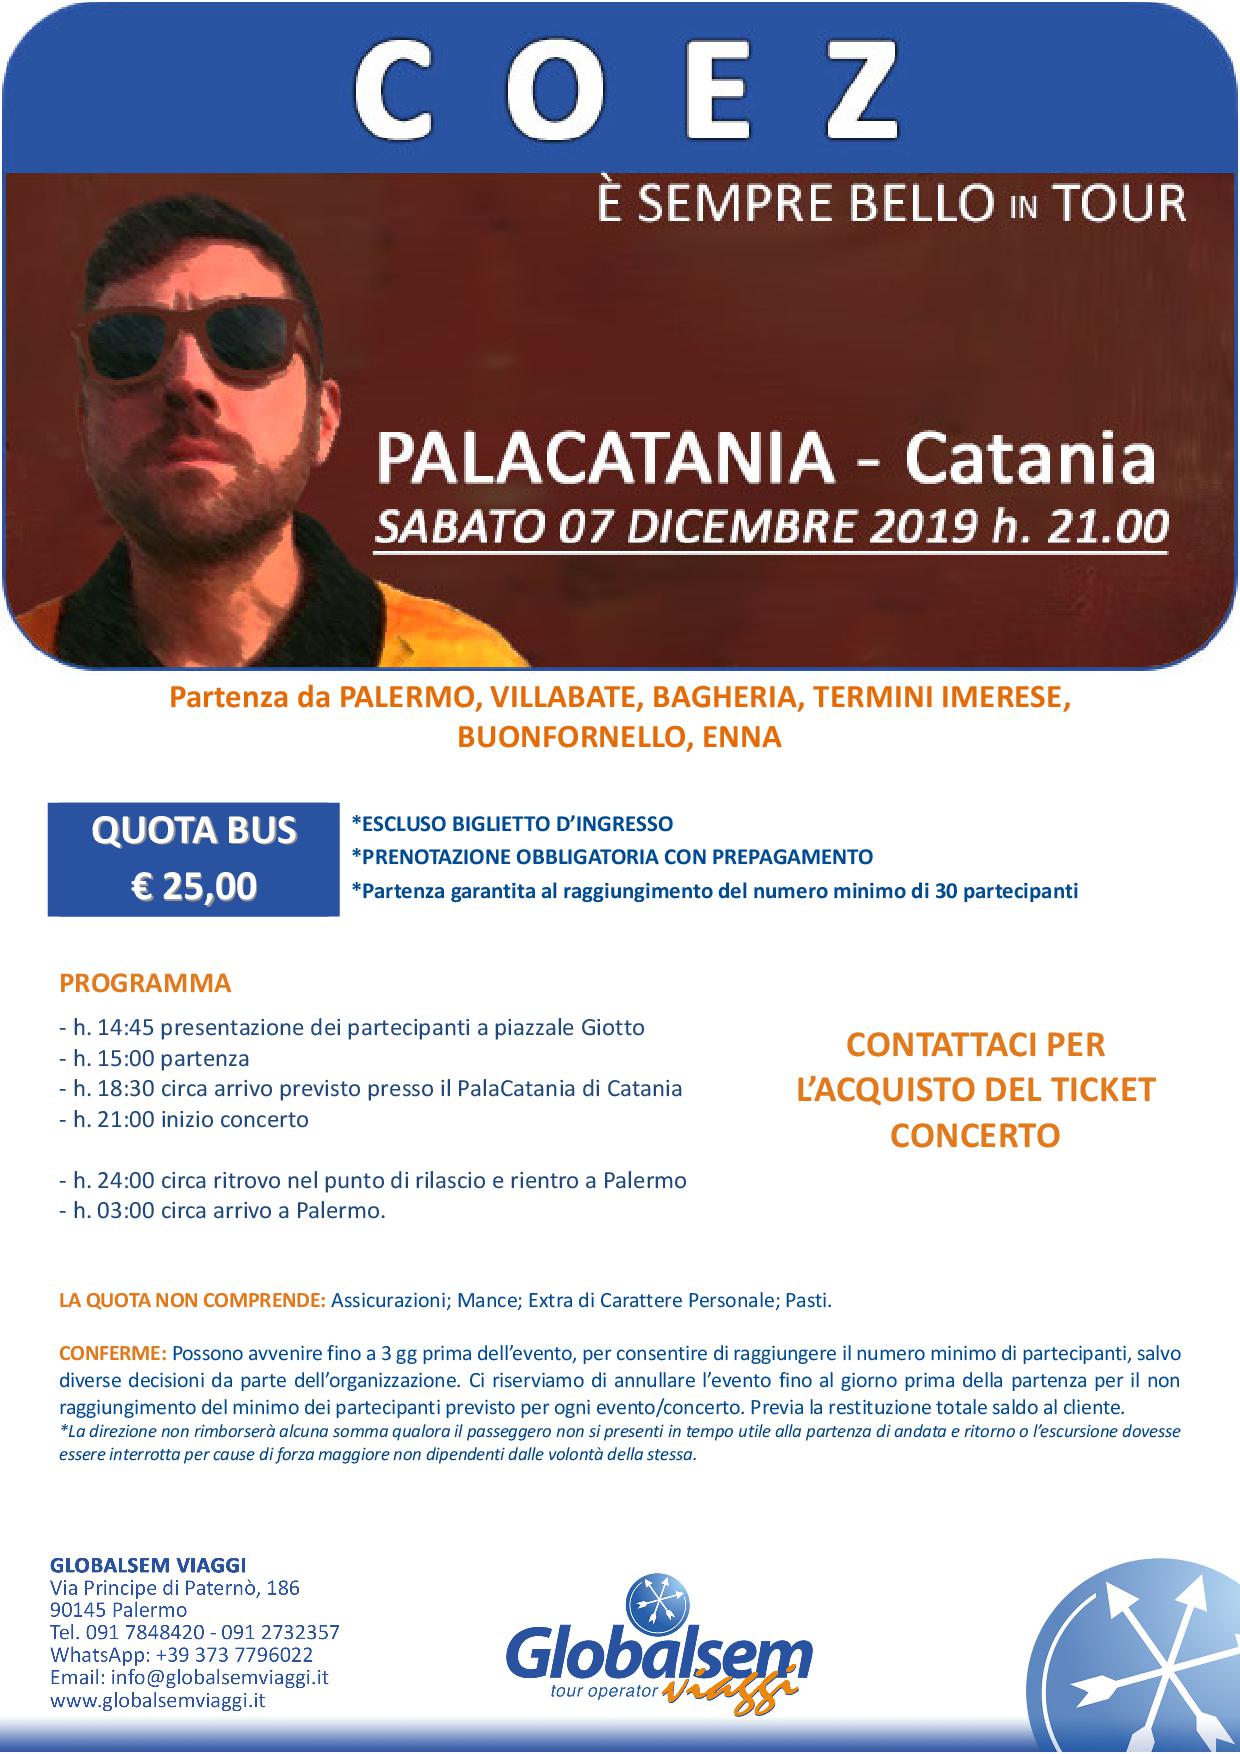 COEZ in concerto a Catania il 7 dicembre 2019 con Bus da Palermo ad € 25 a persona